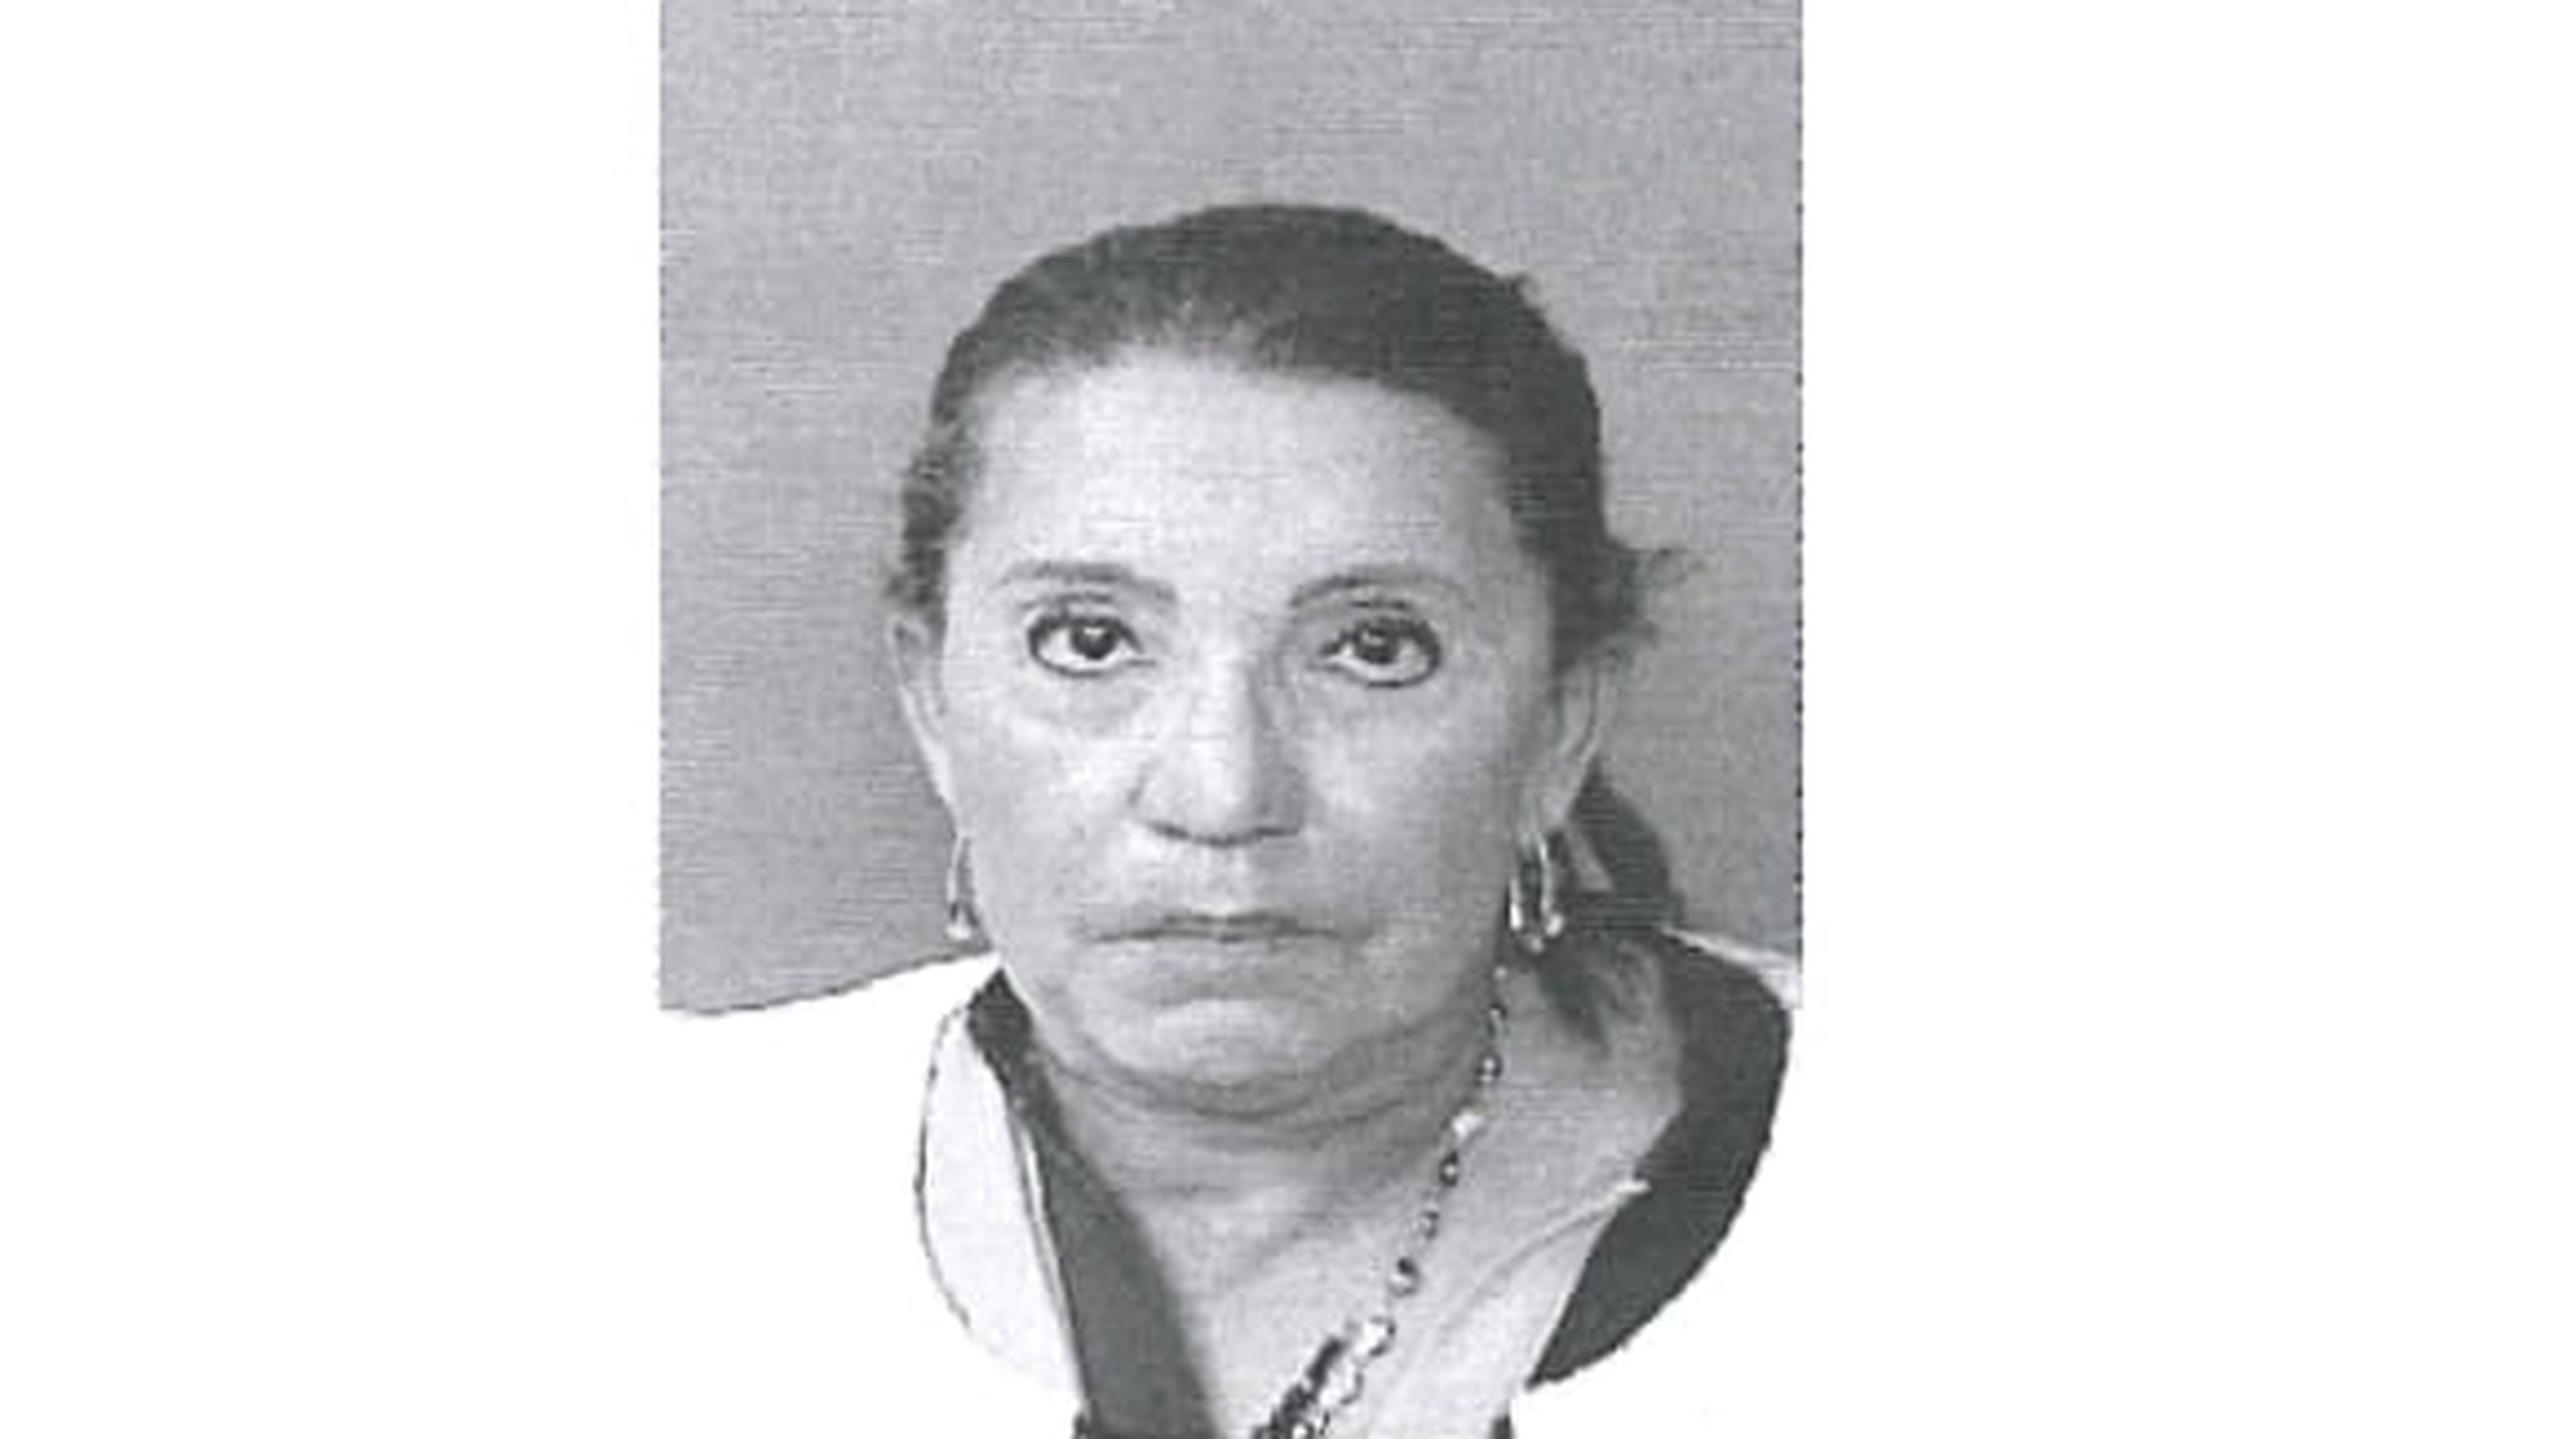 Mayra E. Pérez Oyola de 68 años, fue acusada por asesinato en segundo grado por la muerte de una paciente ocurrida el 5 de agosto del 2018, en el hogar del que era propietaria.